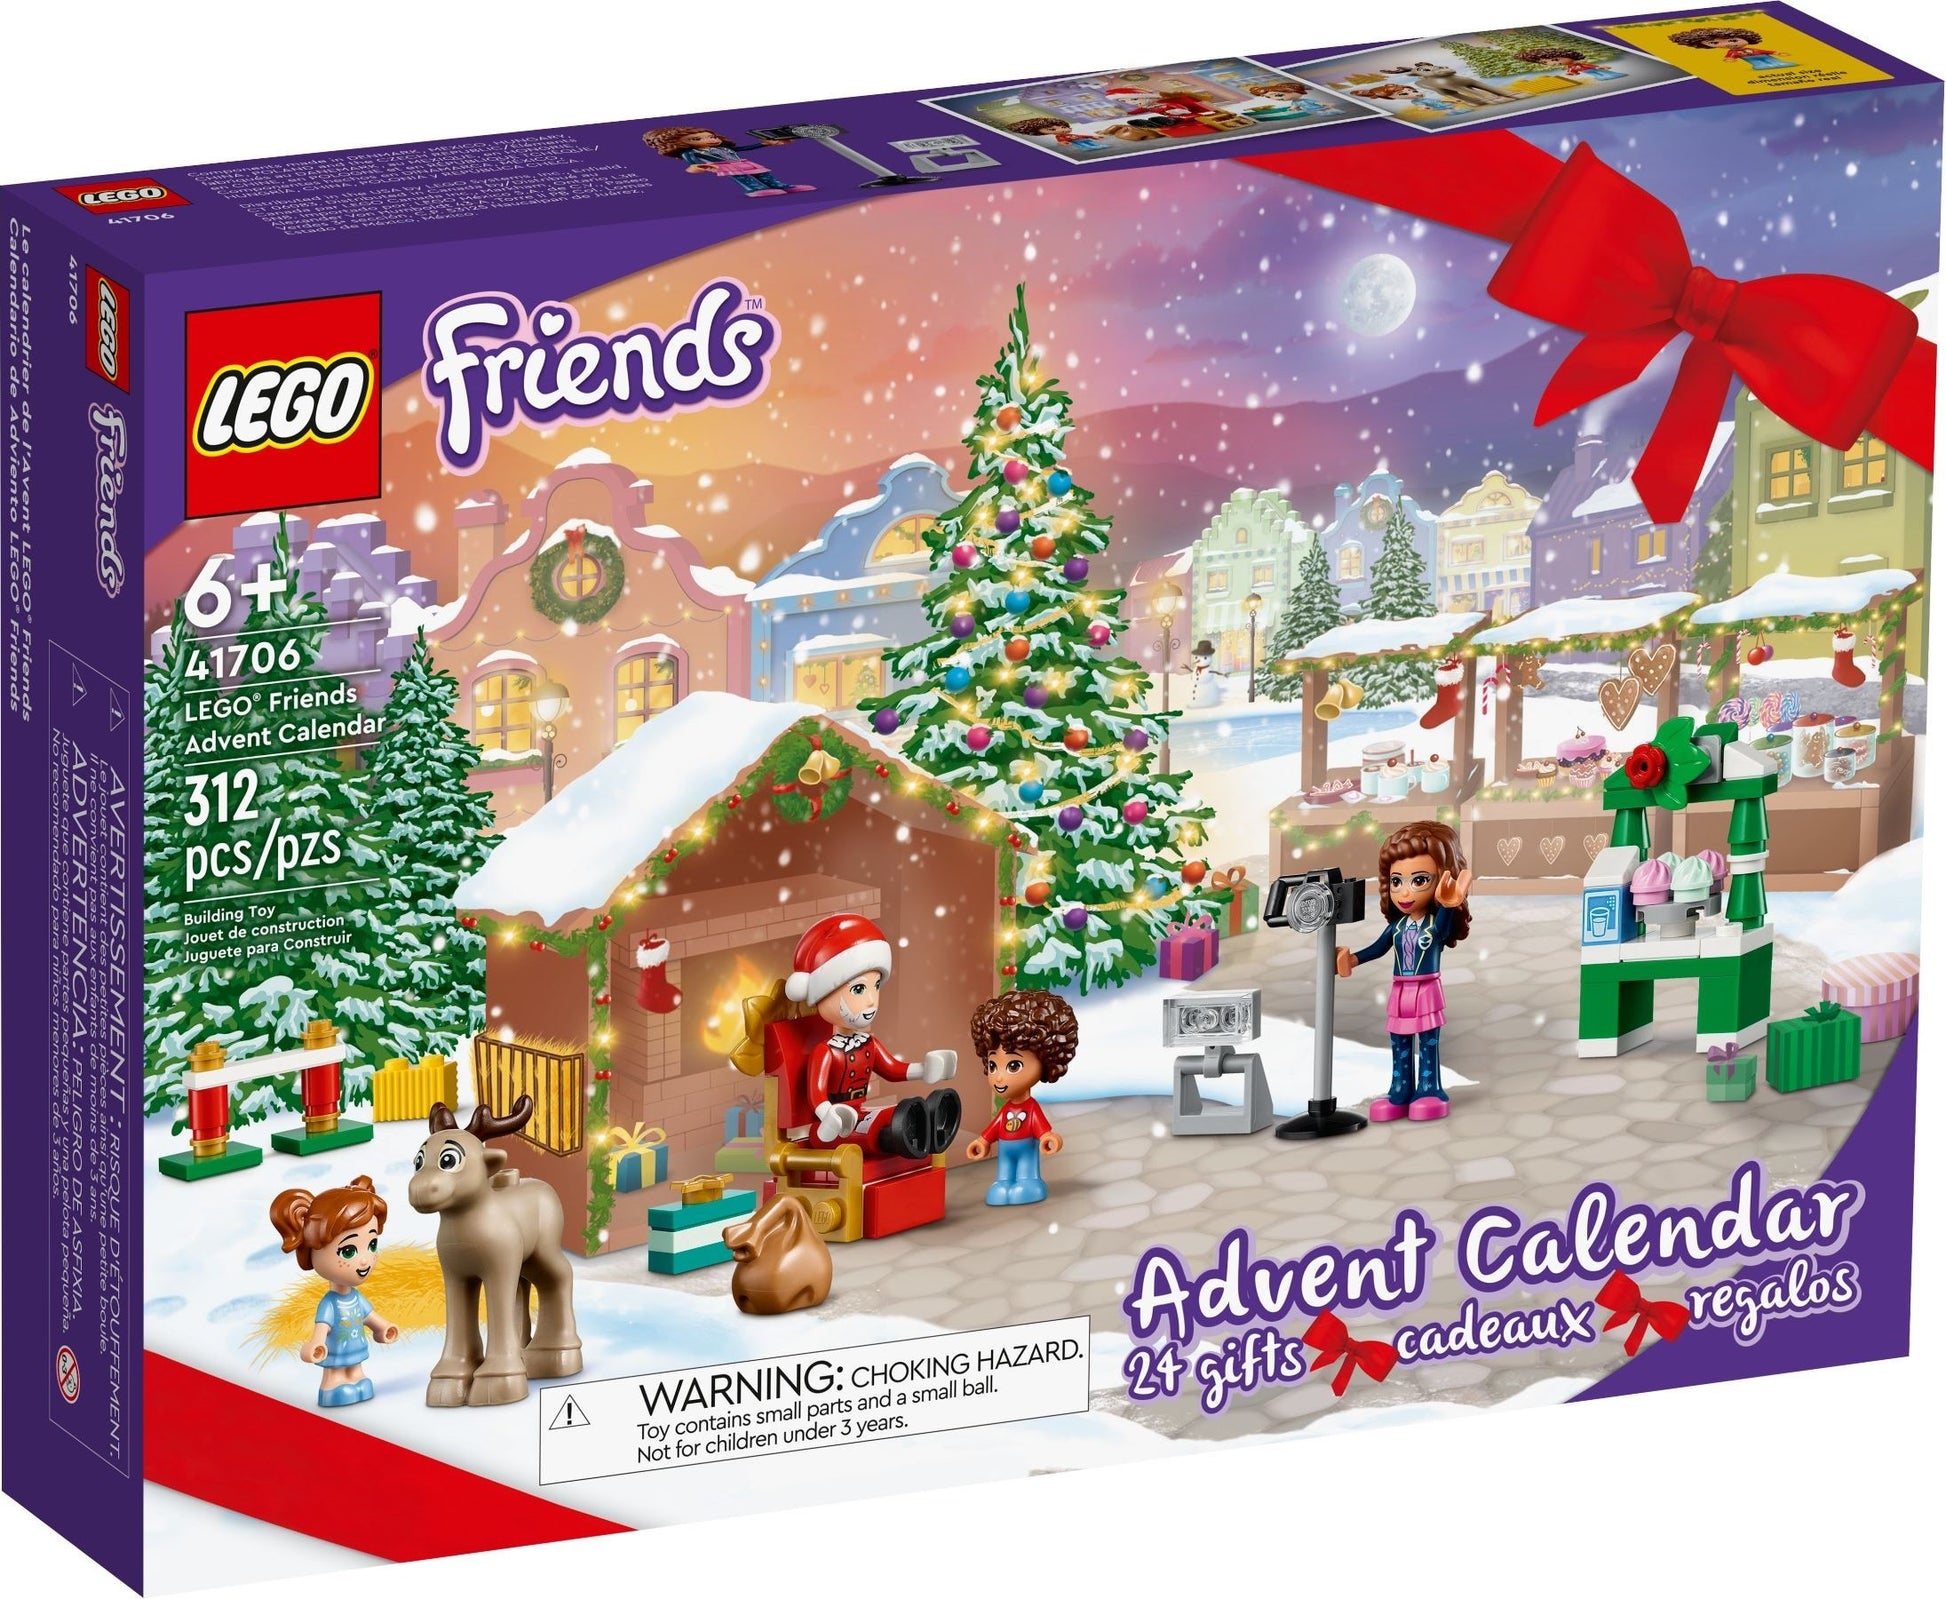 Lego Christmas Tree Advent Calendar - A Few Small Adventures